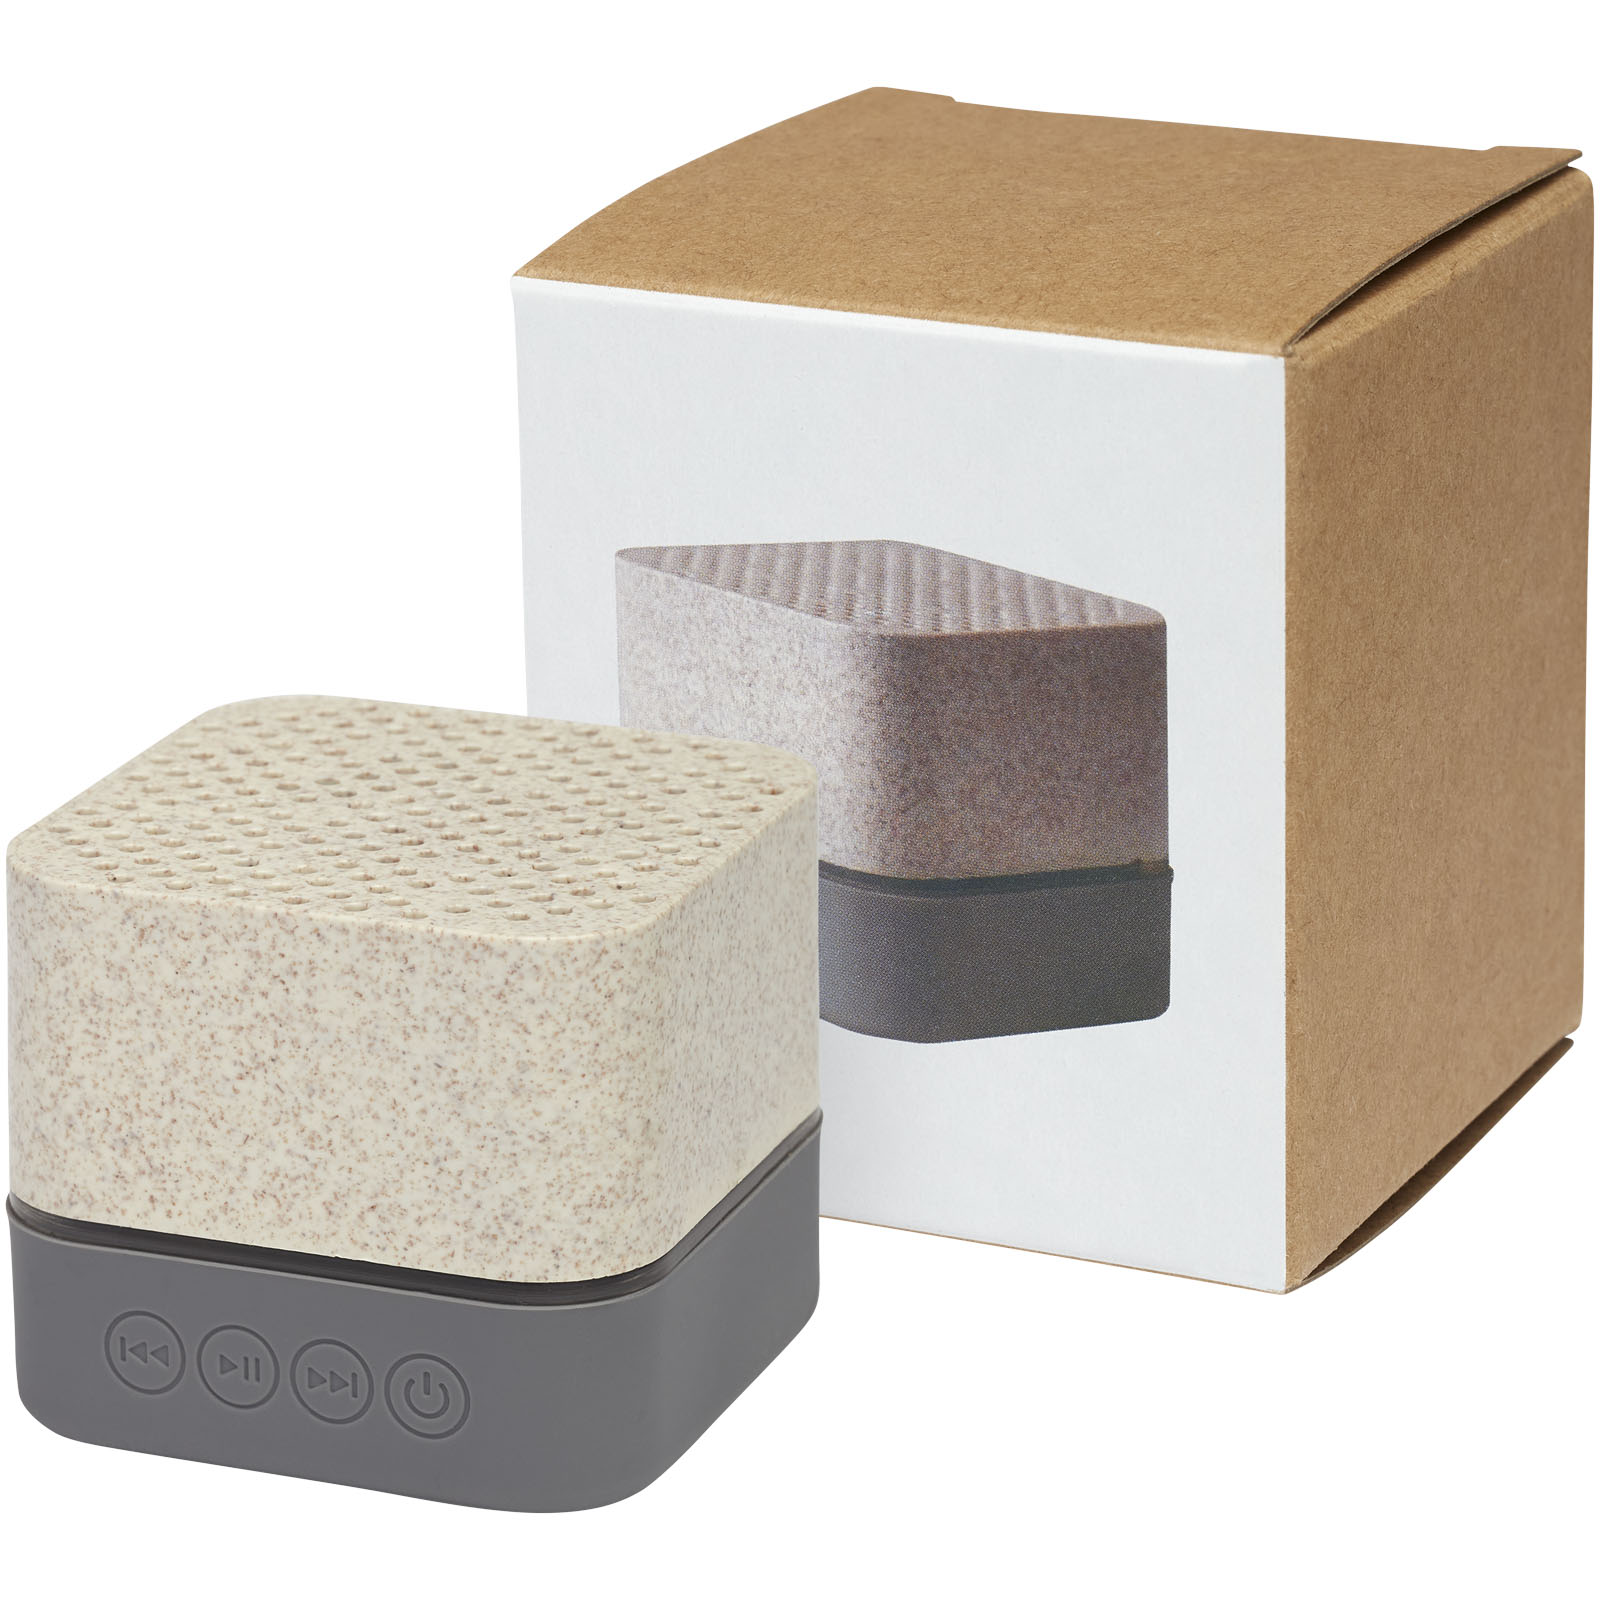 Speakers - Aira wheat straw Bluetooth® speaker